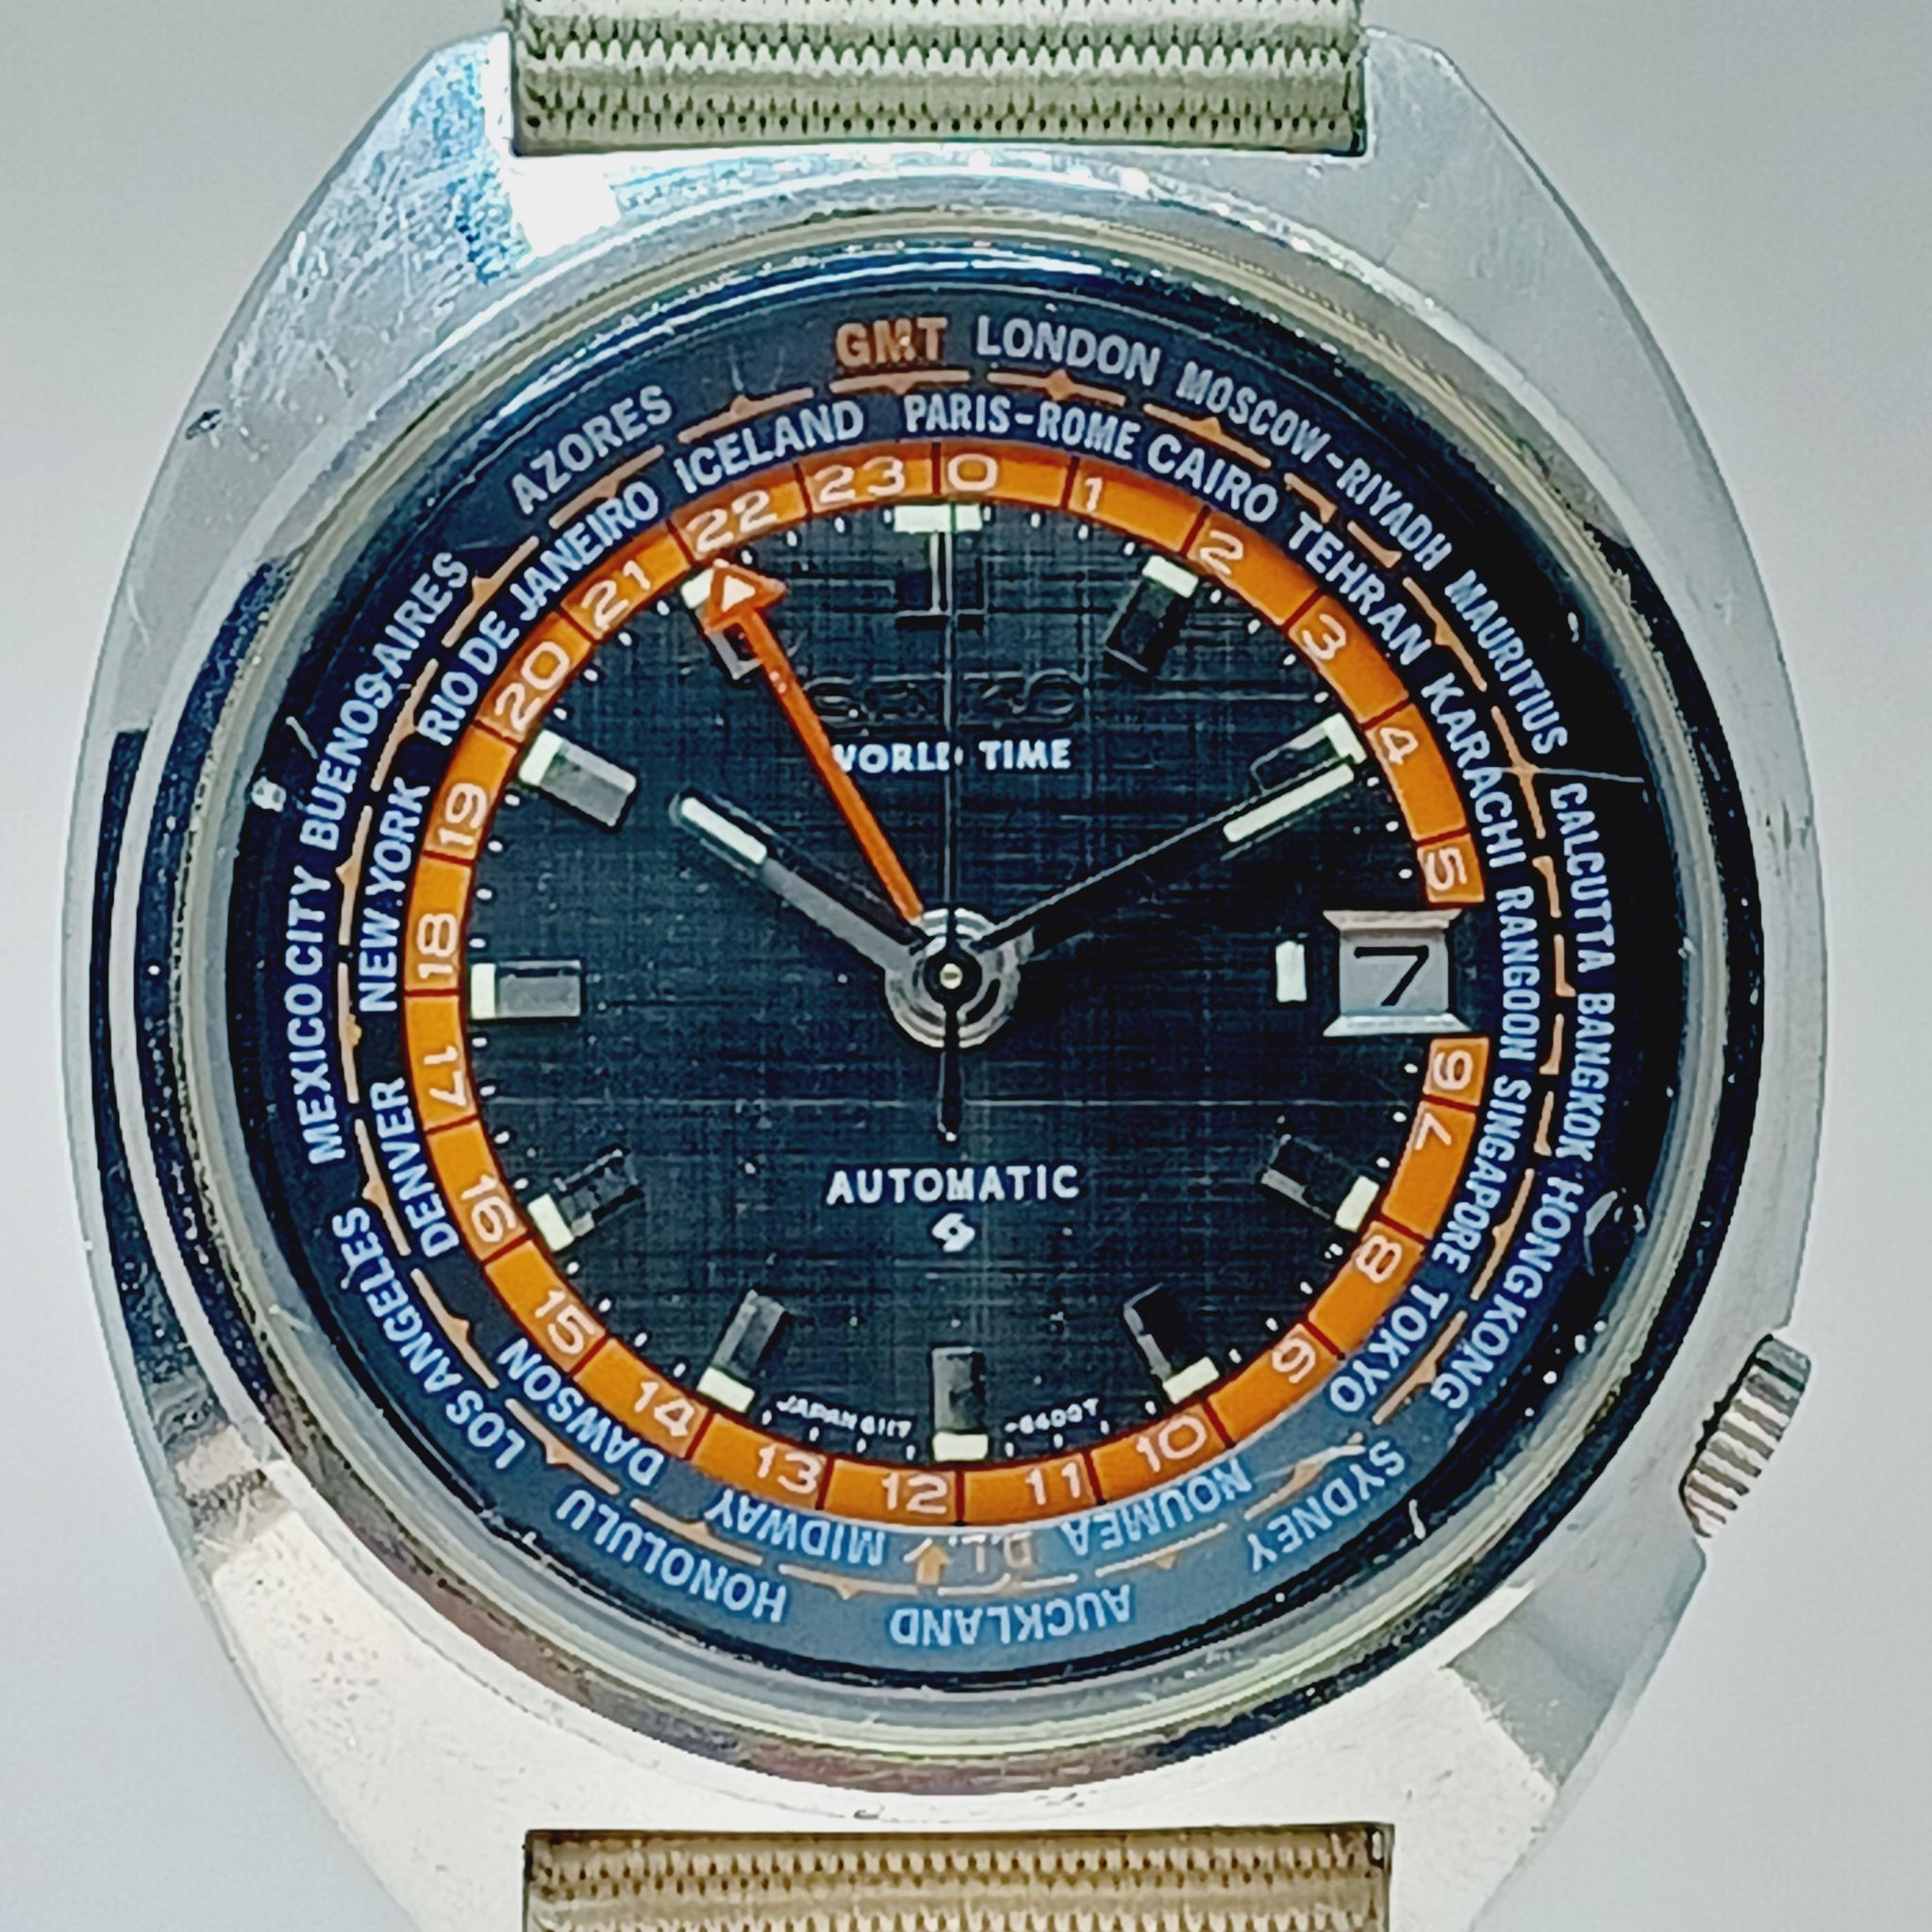 SEIKO Navigator World Time GMT